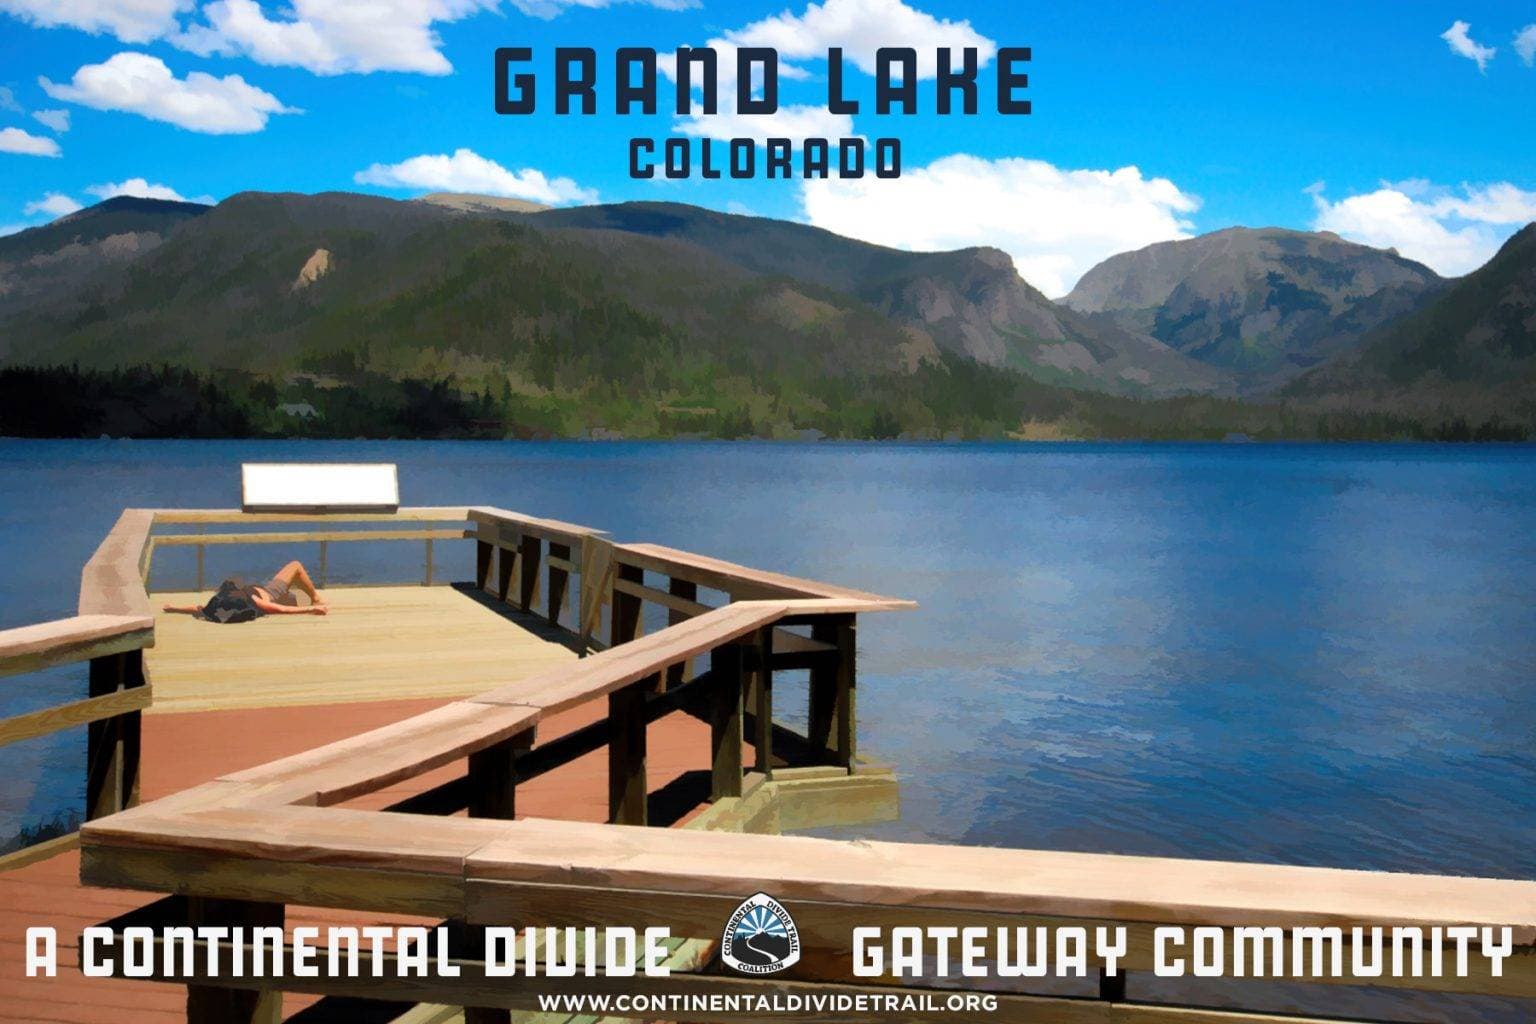 Grand Lake Postcard 1536x1024 